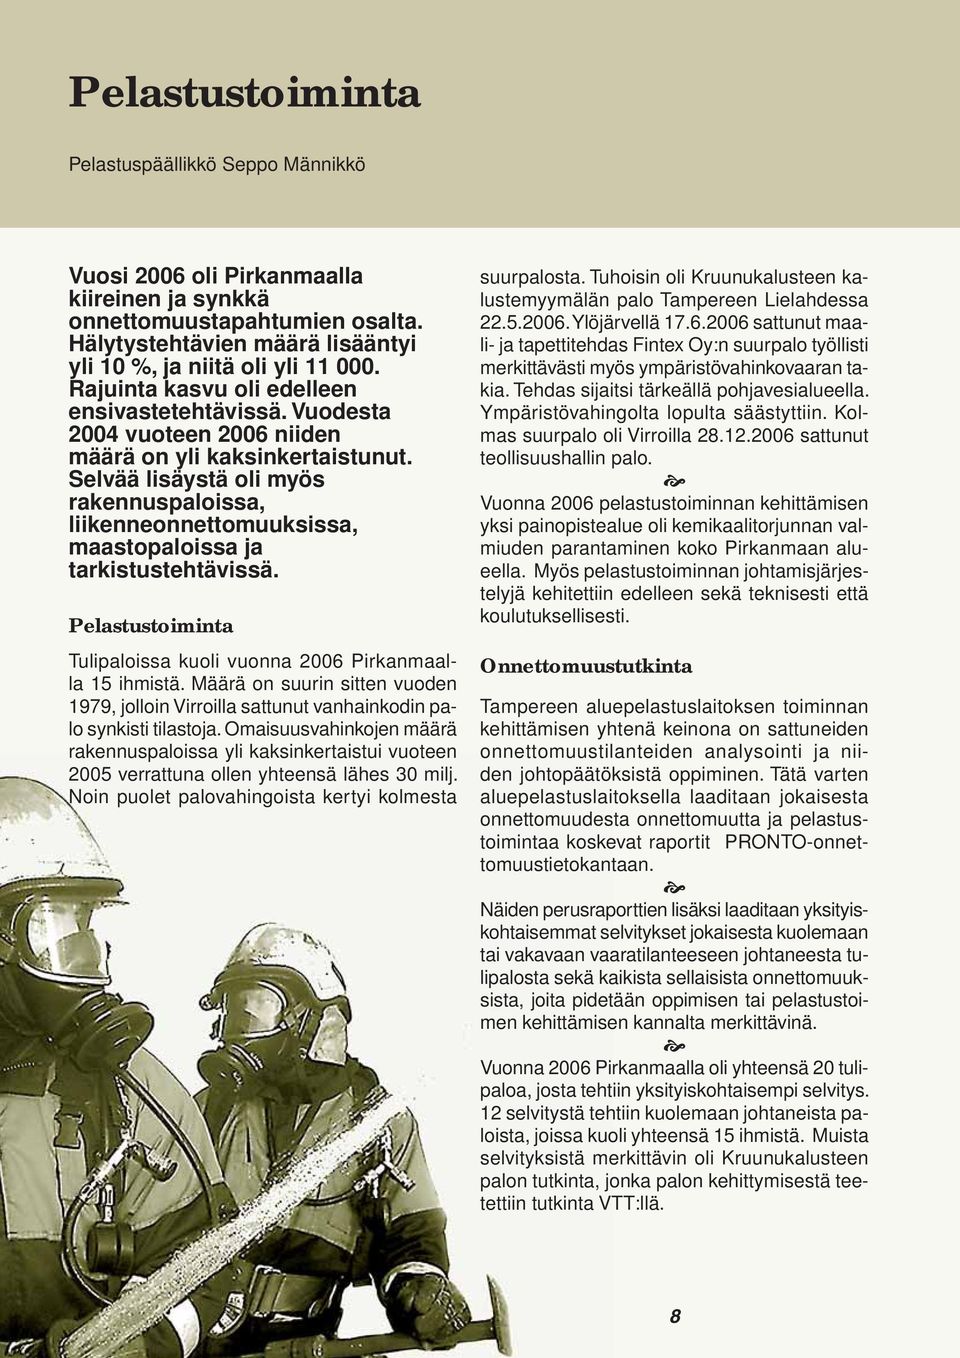 Selvää lisäystä oli myös rakennuspaloissa, liikenneonnettomuuksissa, maastopaloissa ja tarkistustehtävissä. Pelastustoiminta Tulipaloissa kuoli vuonna 2006 Pirkanmaalla 15 ihmistä.